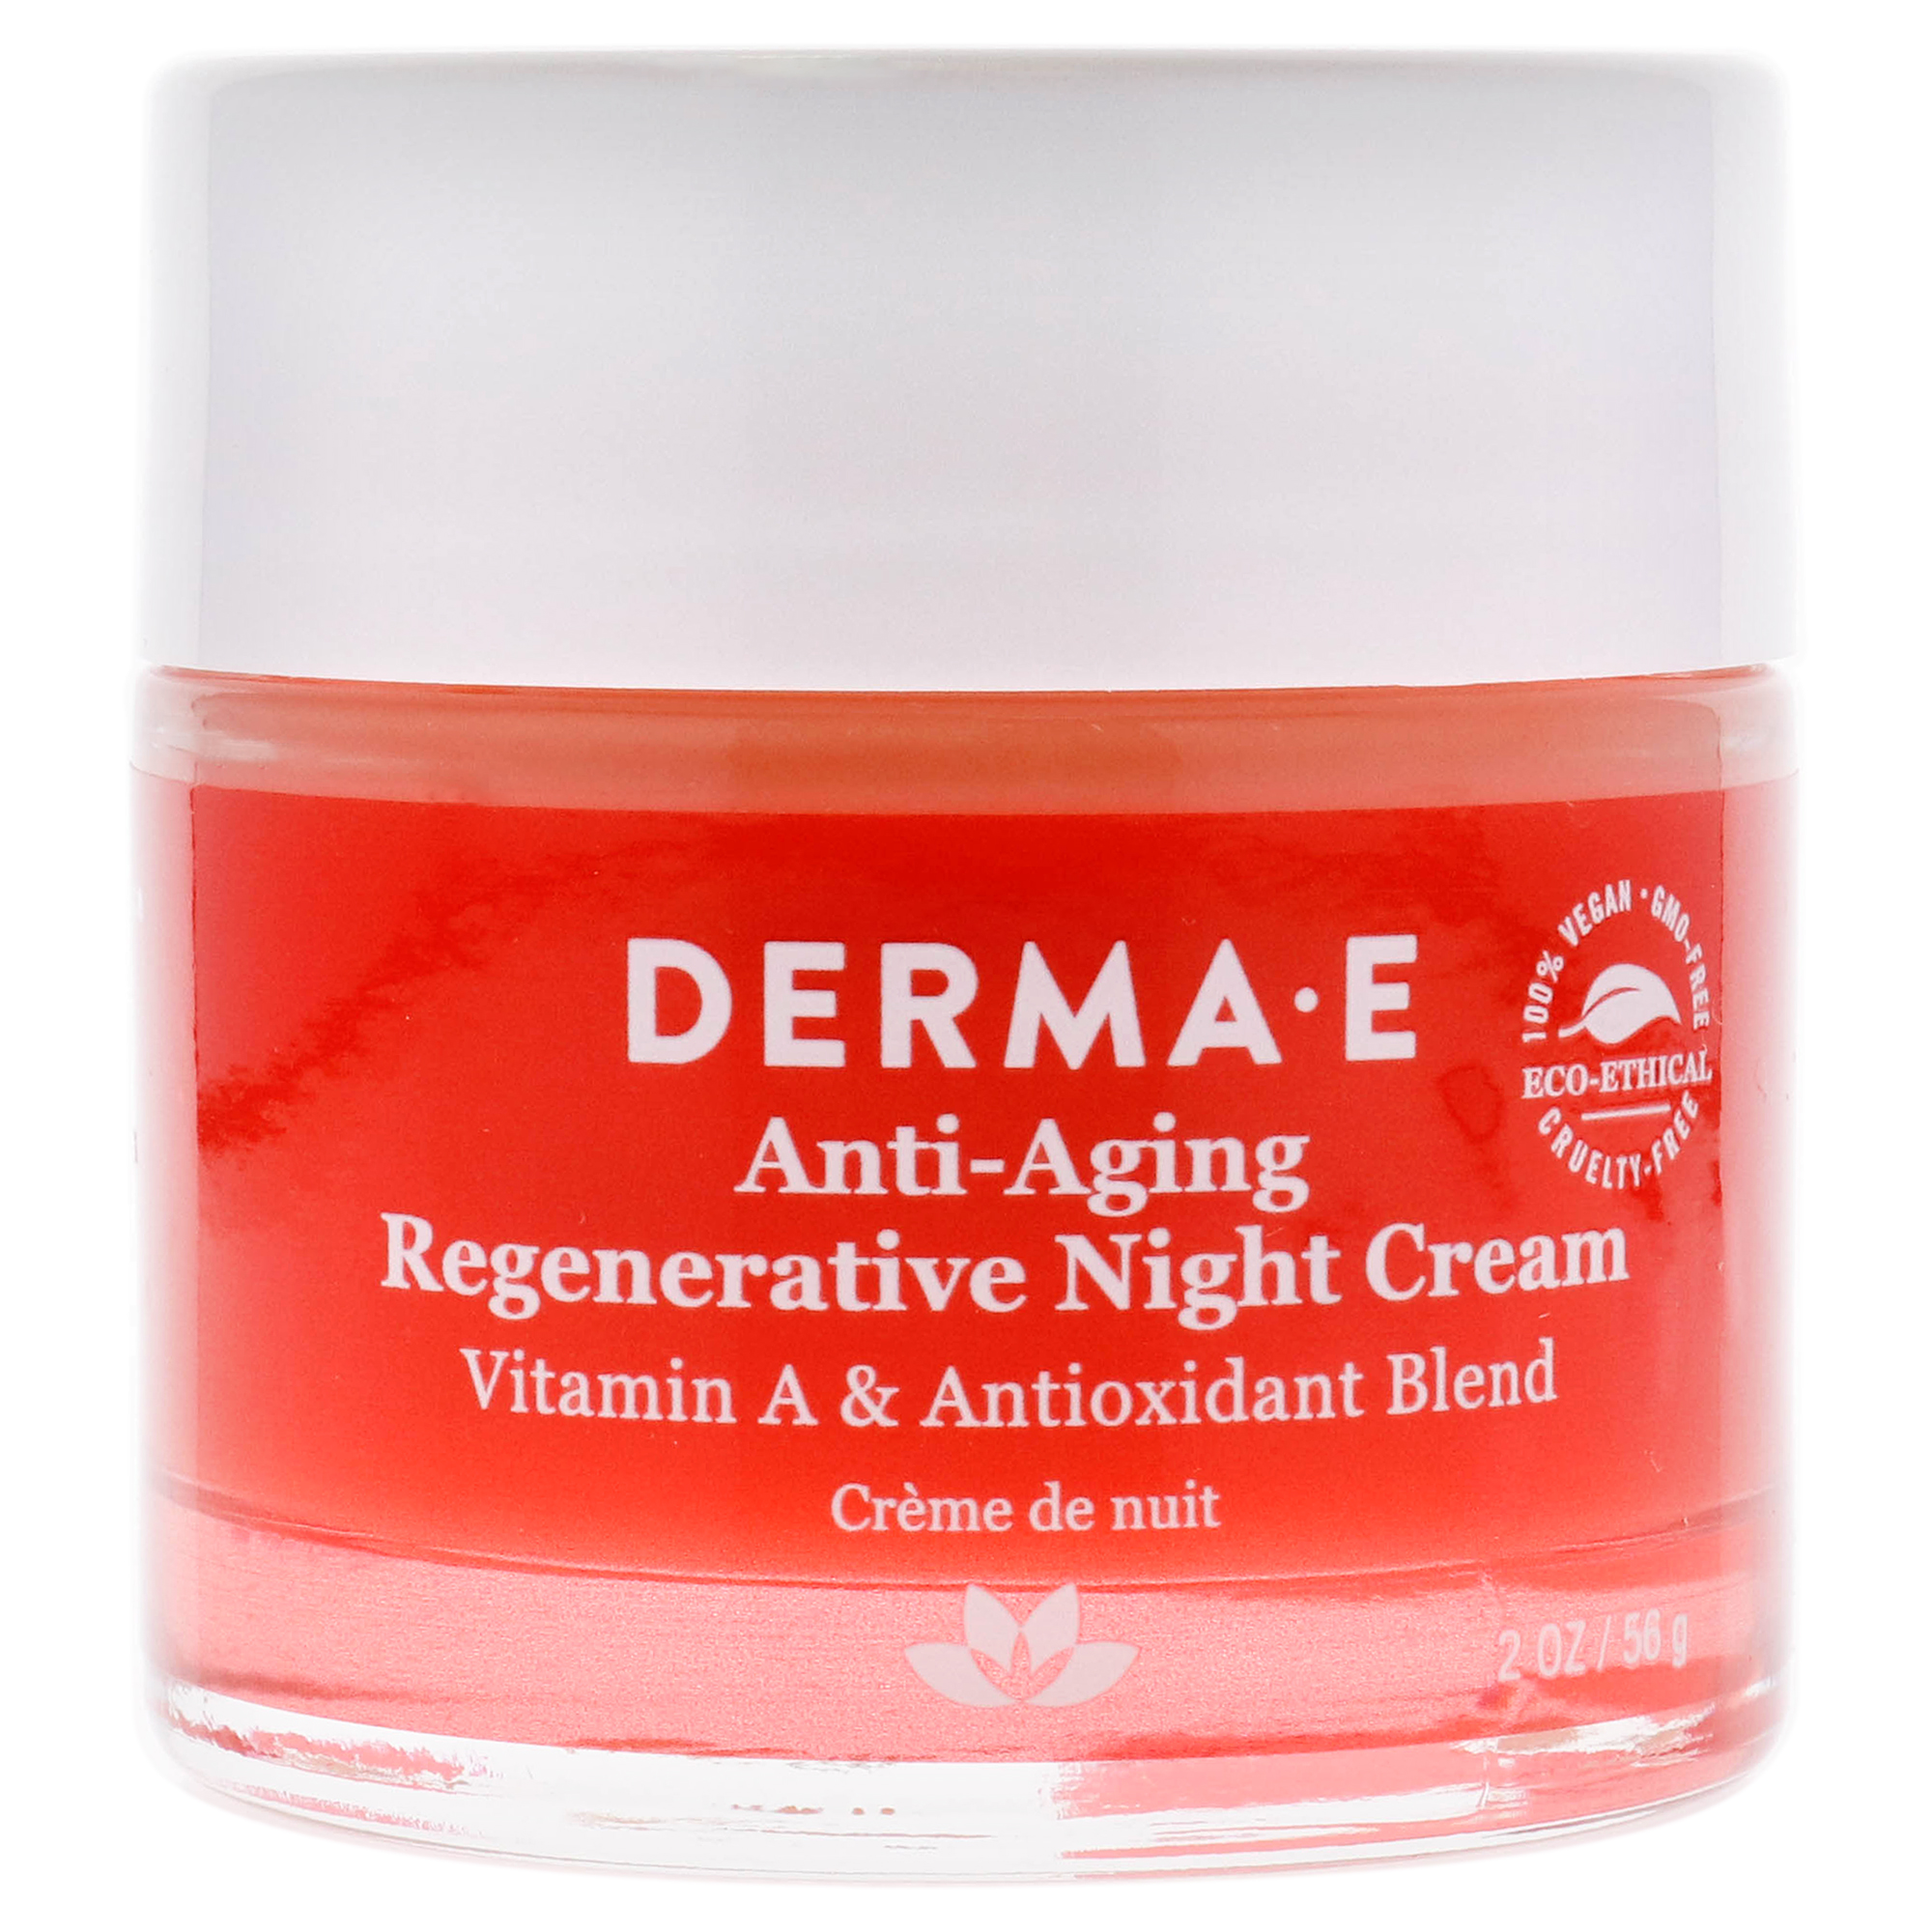 Derma E Anti-Aging Regenerative Night Cream, 2 oz - image 3 of 7